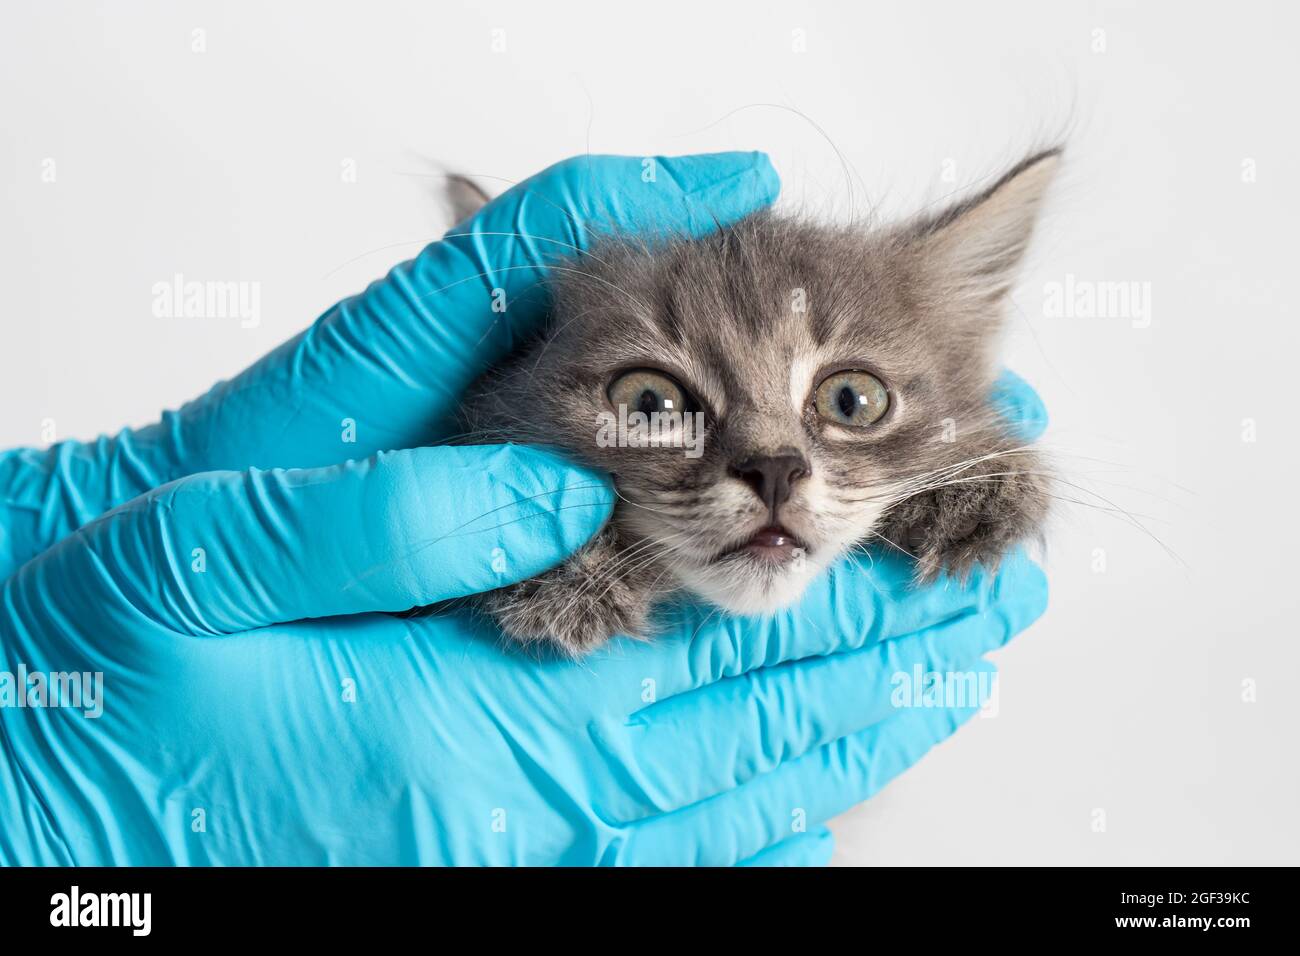 Untersuchung der Augen und Nase des Kätzchens. Tierklinik, Prävention und Behandlung von Krankheiten bei Katzen Stockfoto